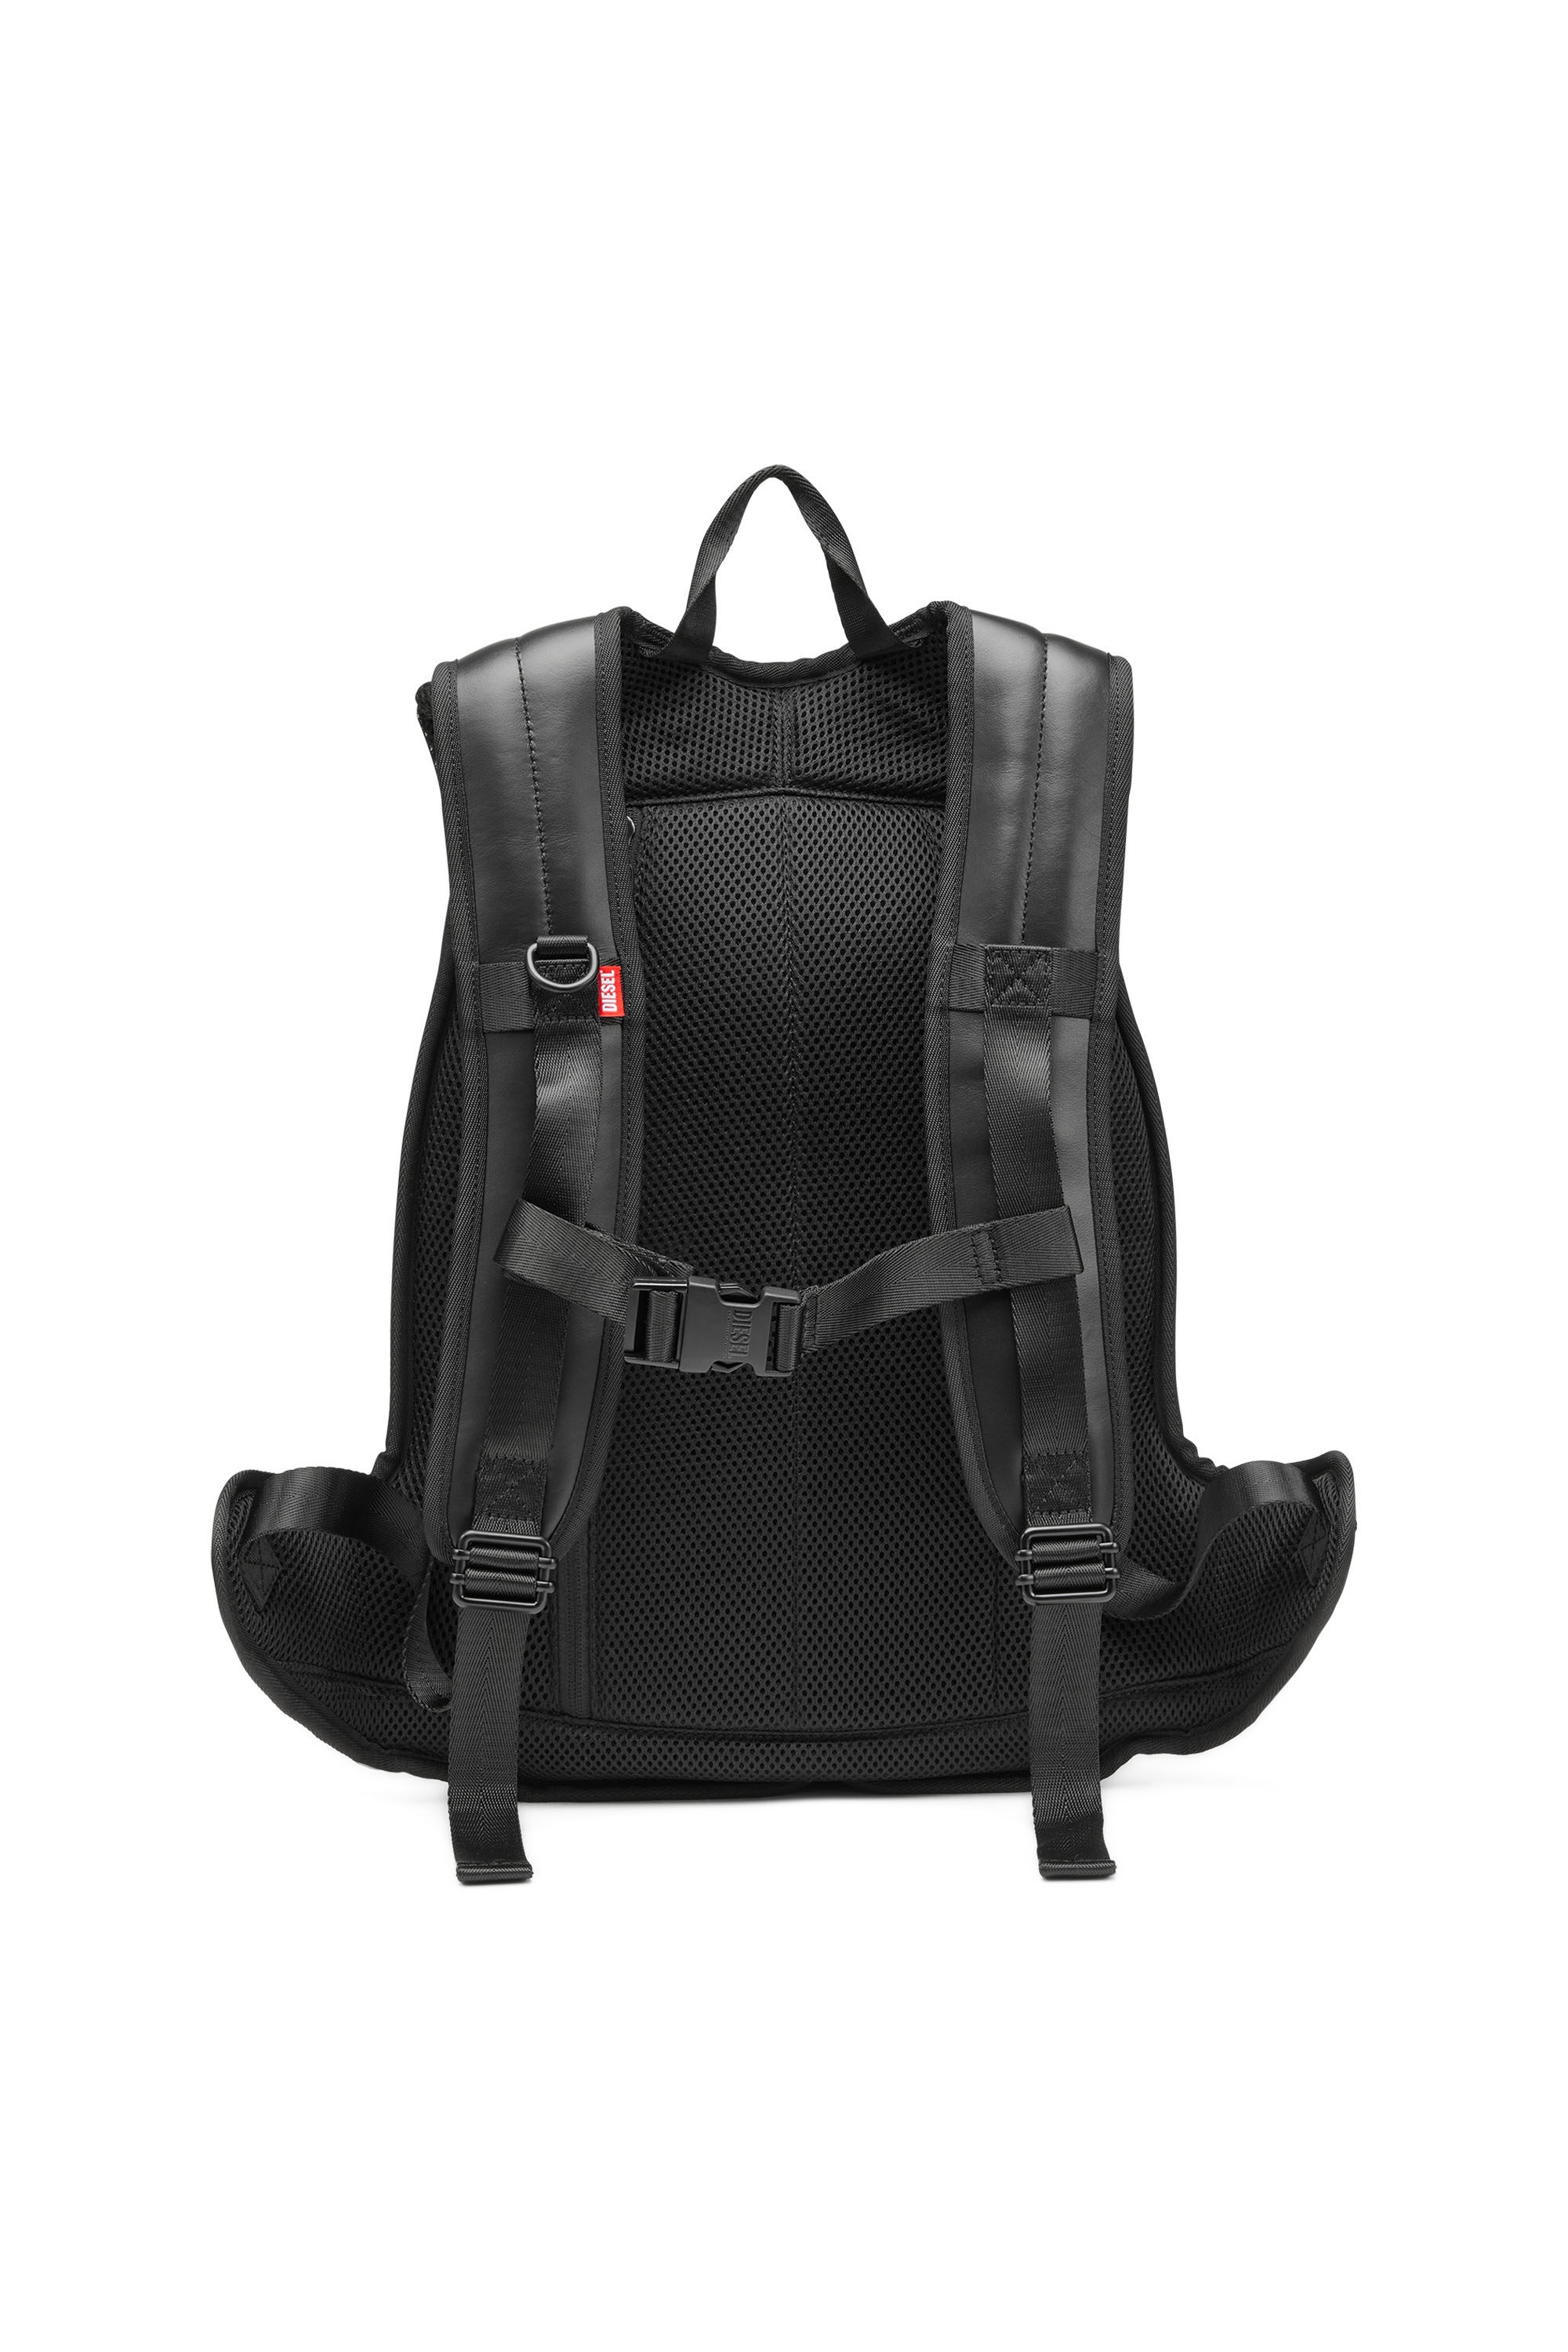 Diesel - 1DR-POD BACKPACK, Man 1DR-Pod Backpack - Hard shell leather backpack in Black - Image 2